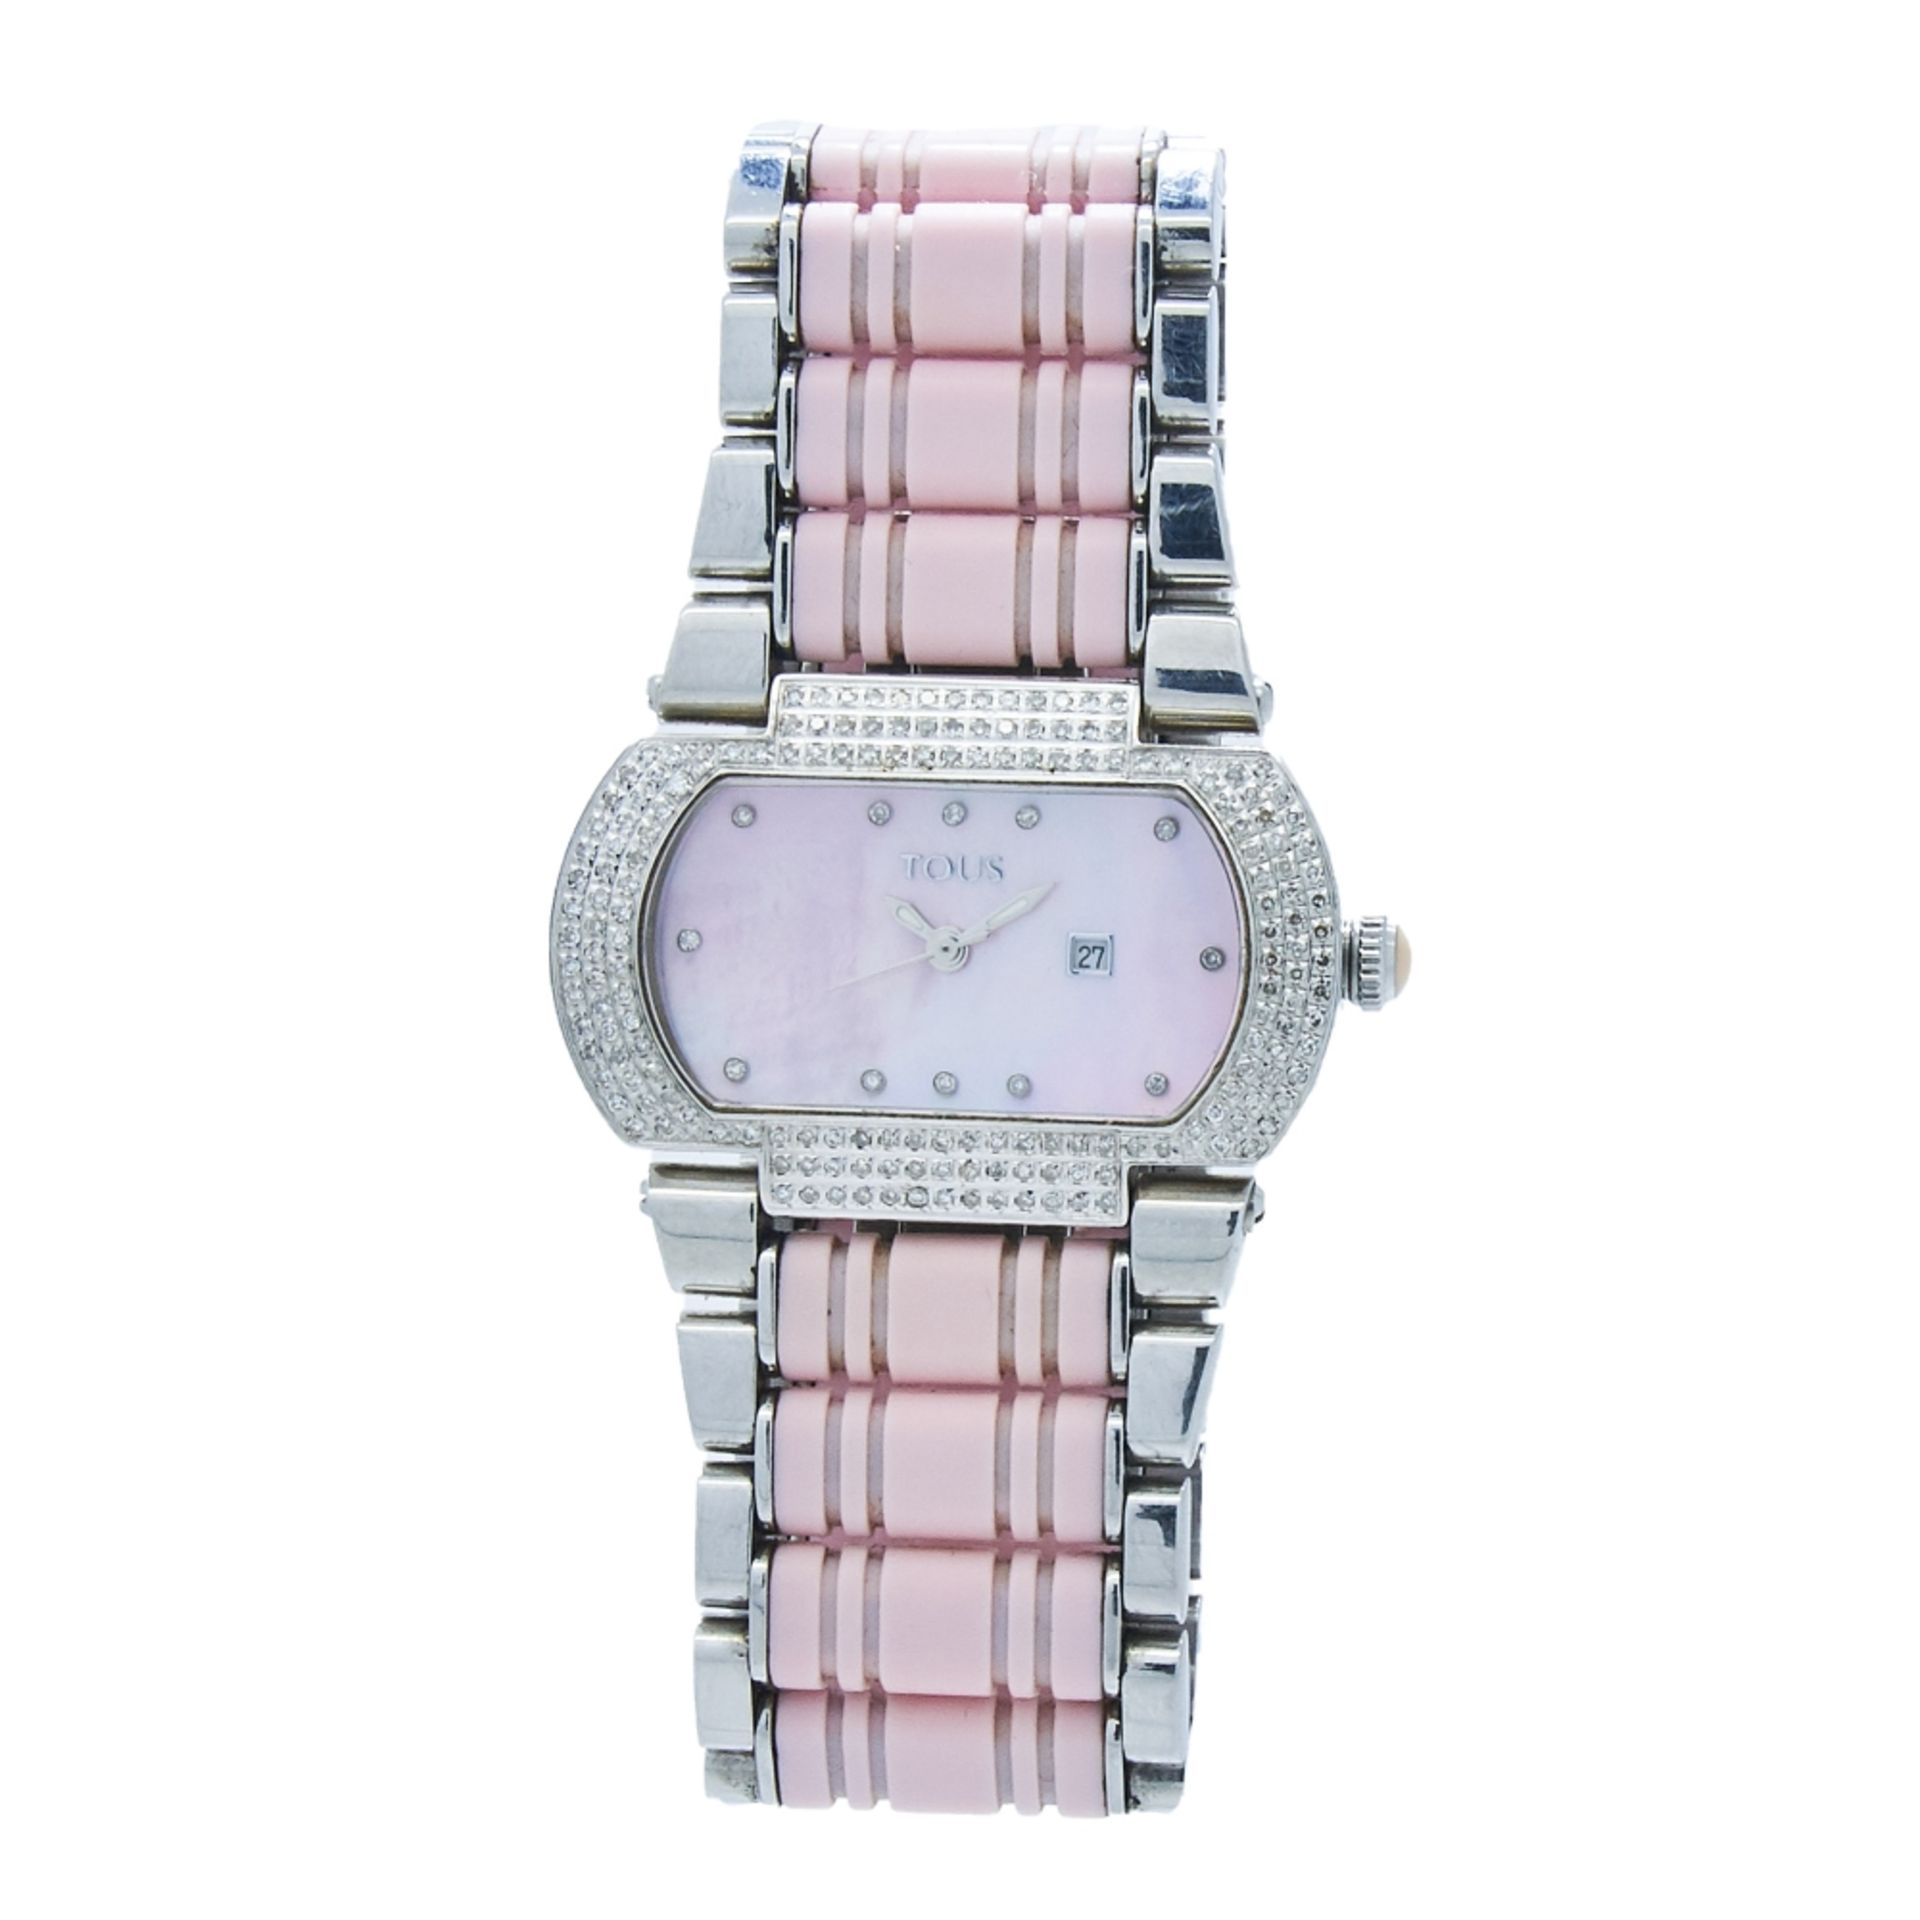 Reloj Tous para señora en acero, caucho rosa y diamantes. Mecanismo de quartz.